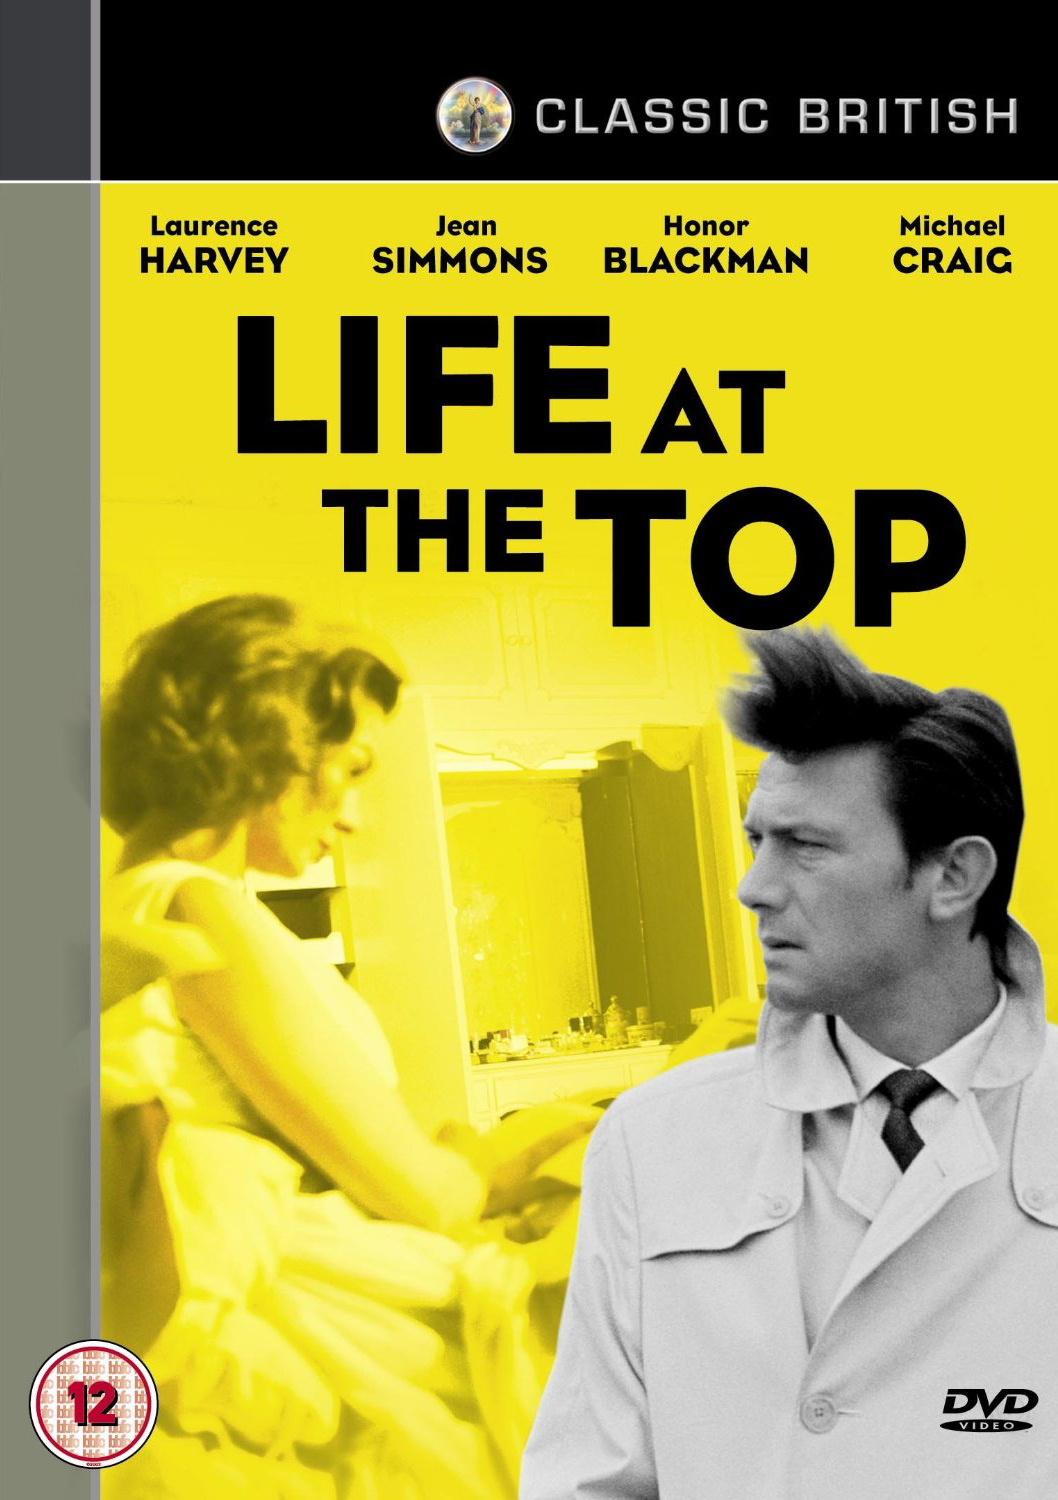  فیلم سینمایی Life at the Top به کارگردانی Ted Kotcheff